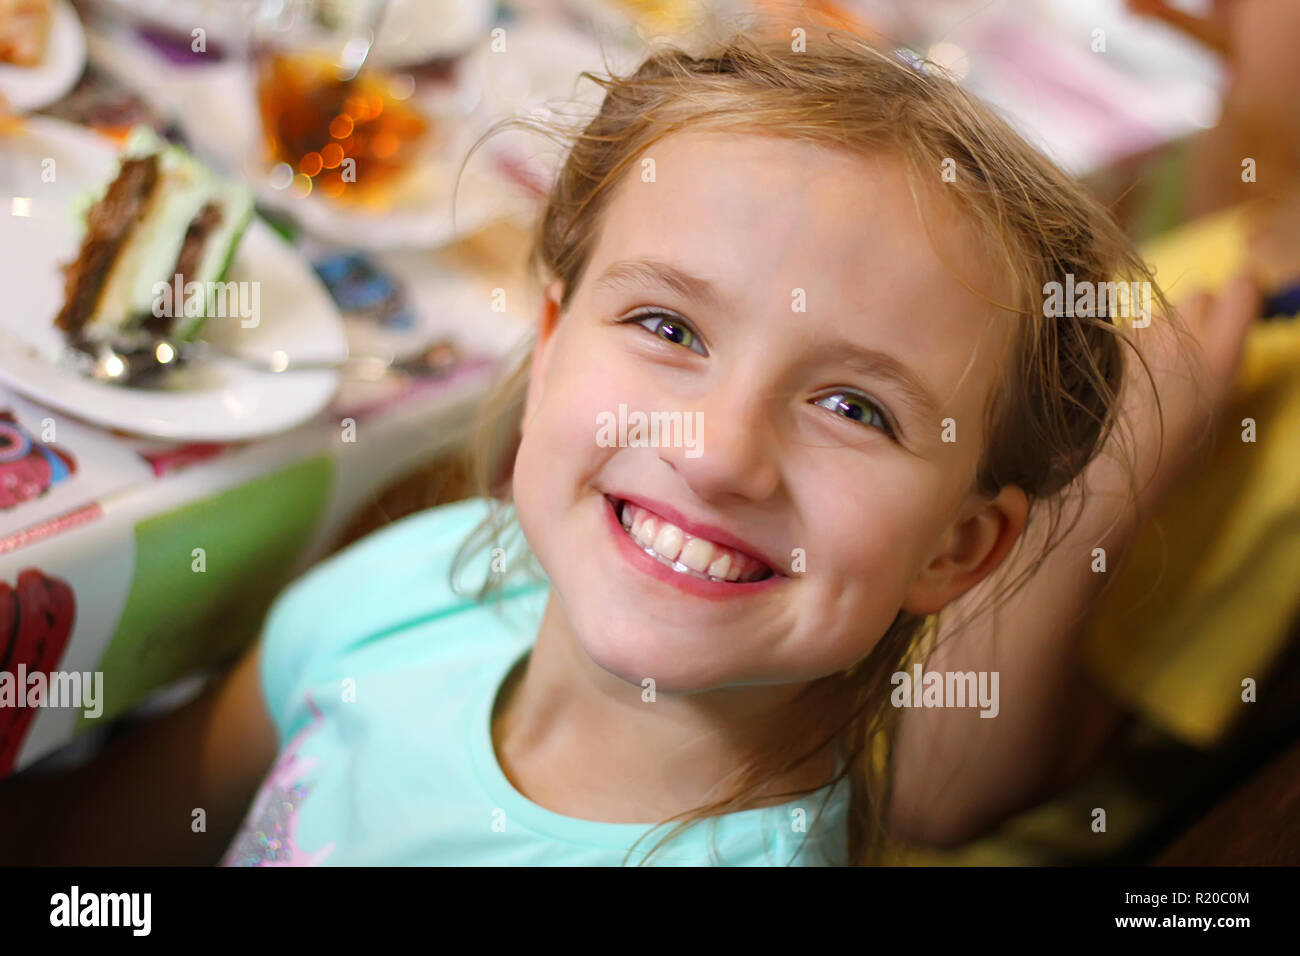 Los niños felices a una chica de la fiesta de cumpleaños Foto de stock